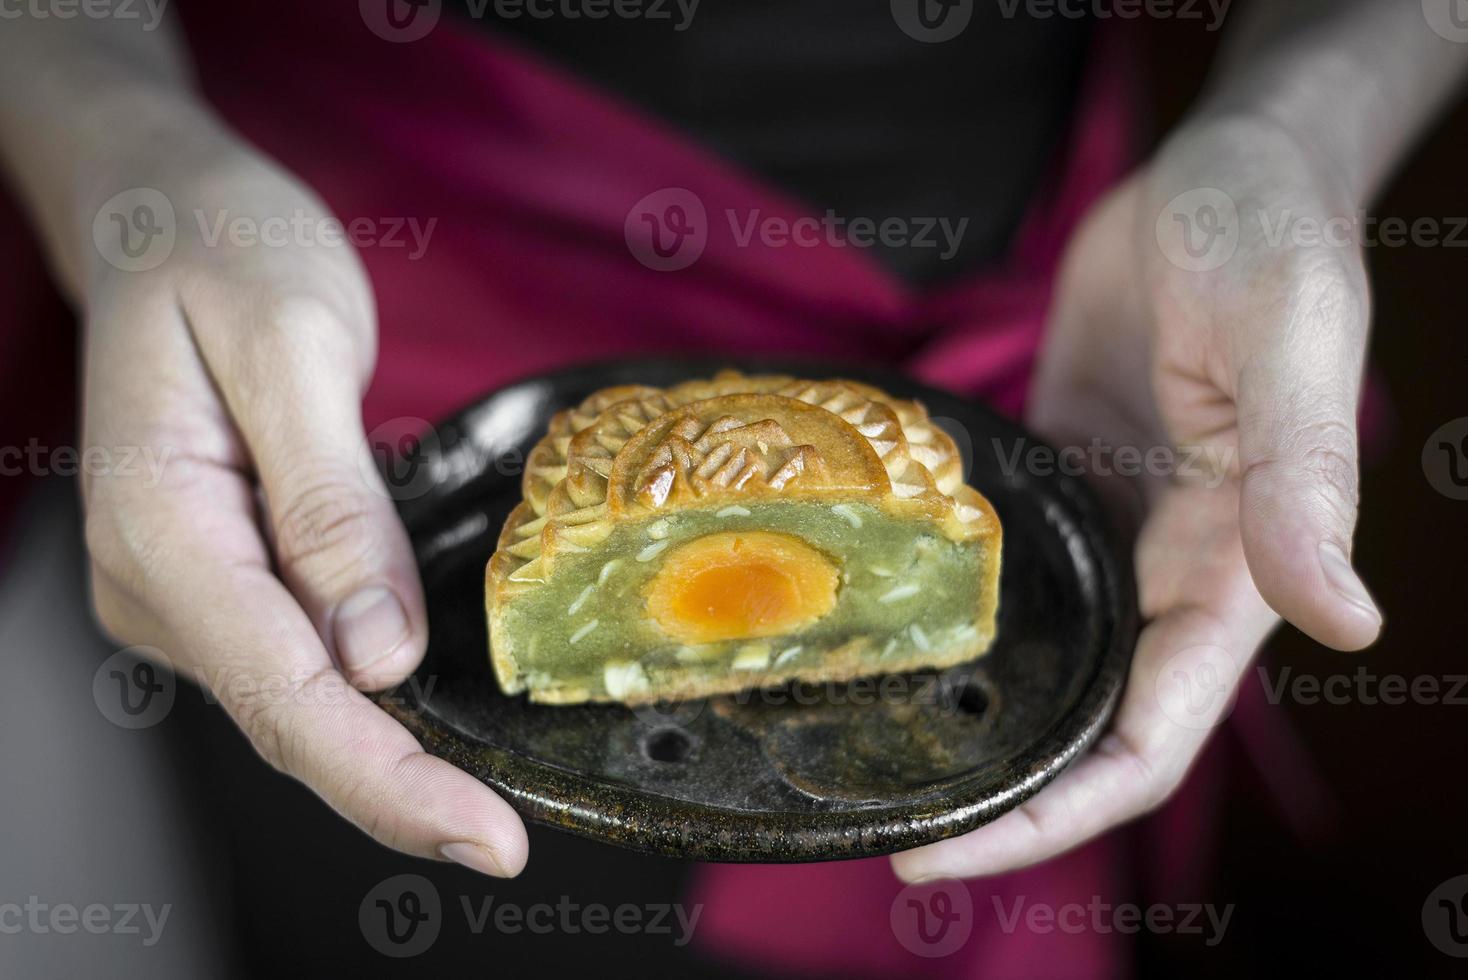 traditionell kinesisk gourmet mooncakes festlig söt mat närbild foto